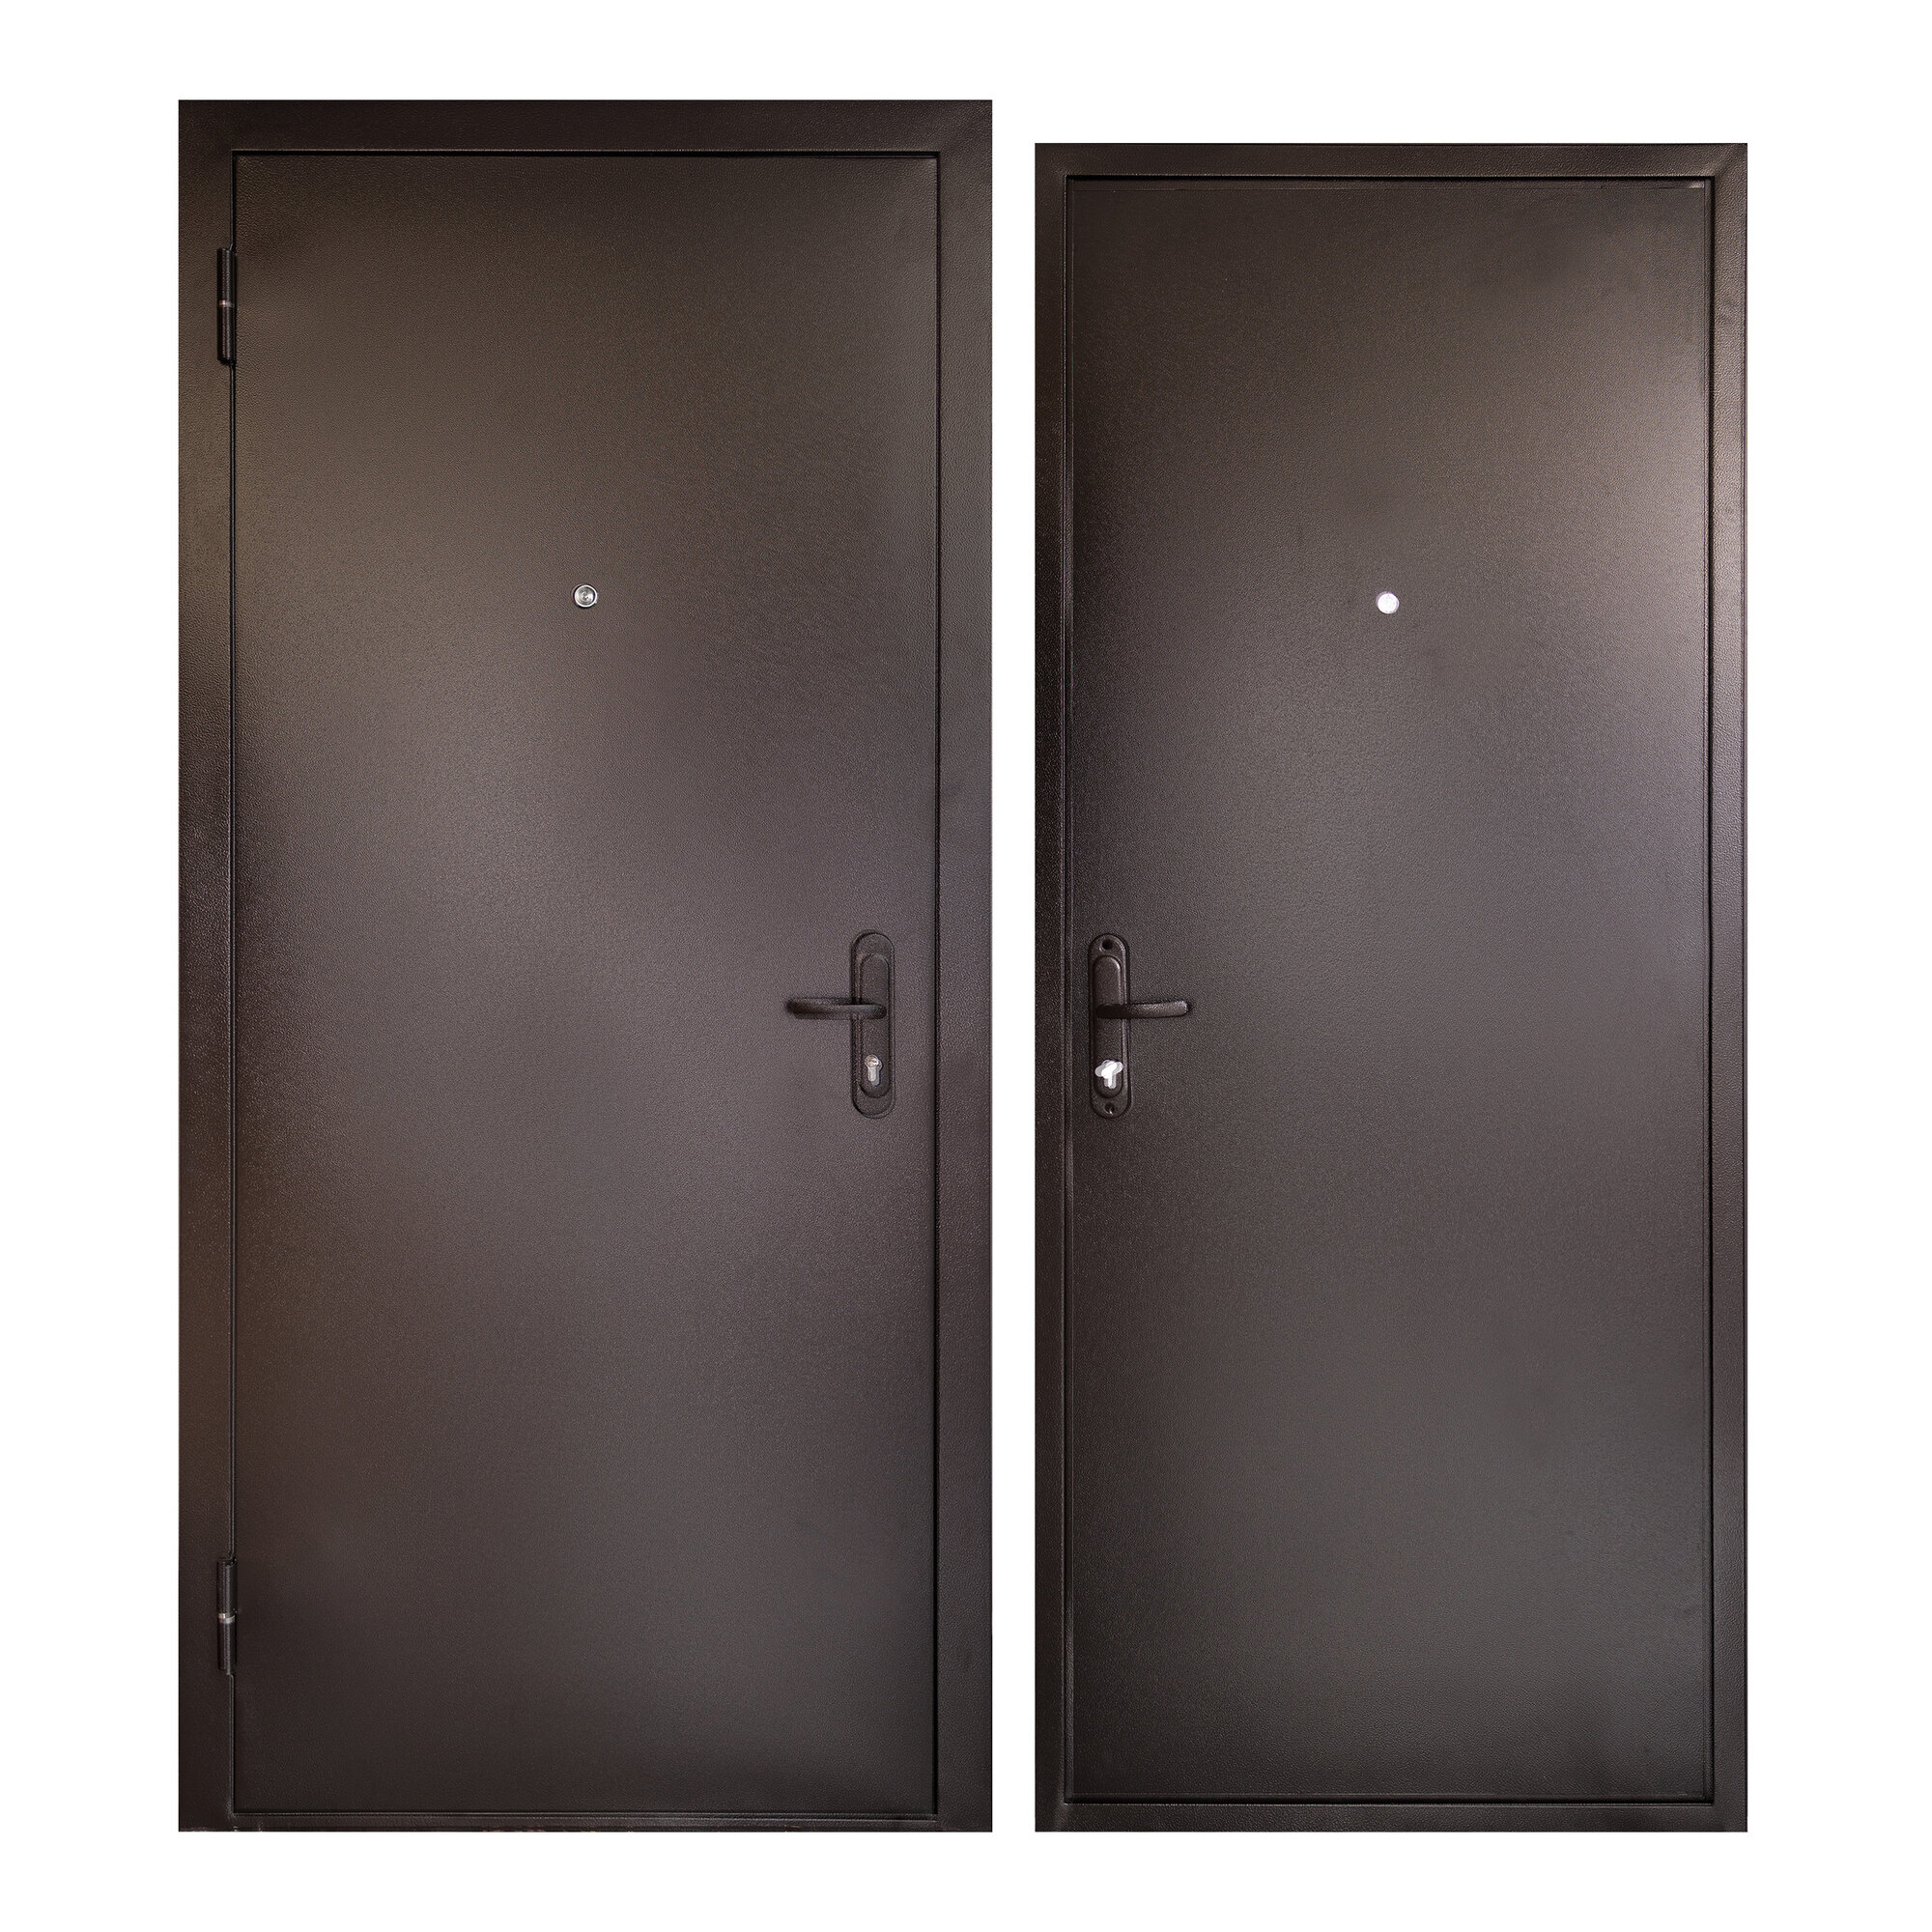 Дверь входная для квартиры Unicorn металлическая Terminal 860х2050, левая, антивандальное покрытие, уплотнитель, цилиндровый замок, коричневый